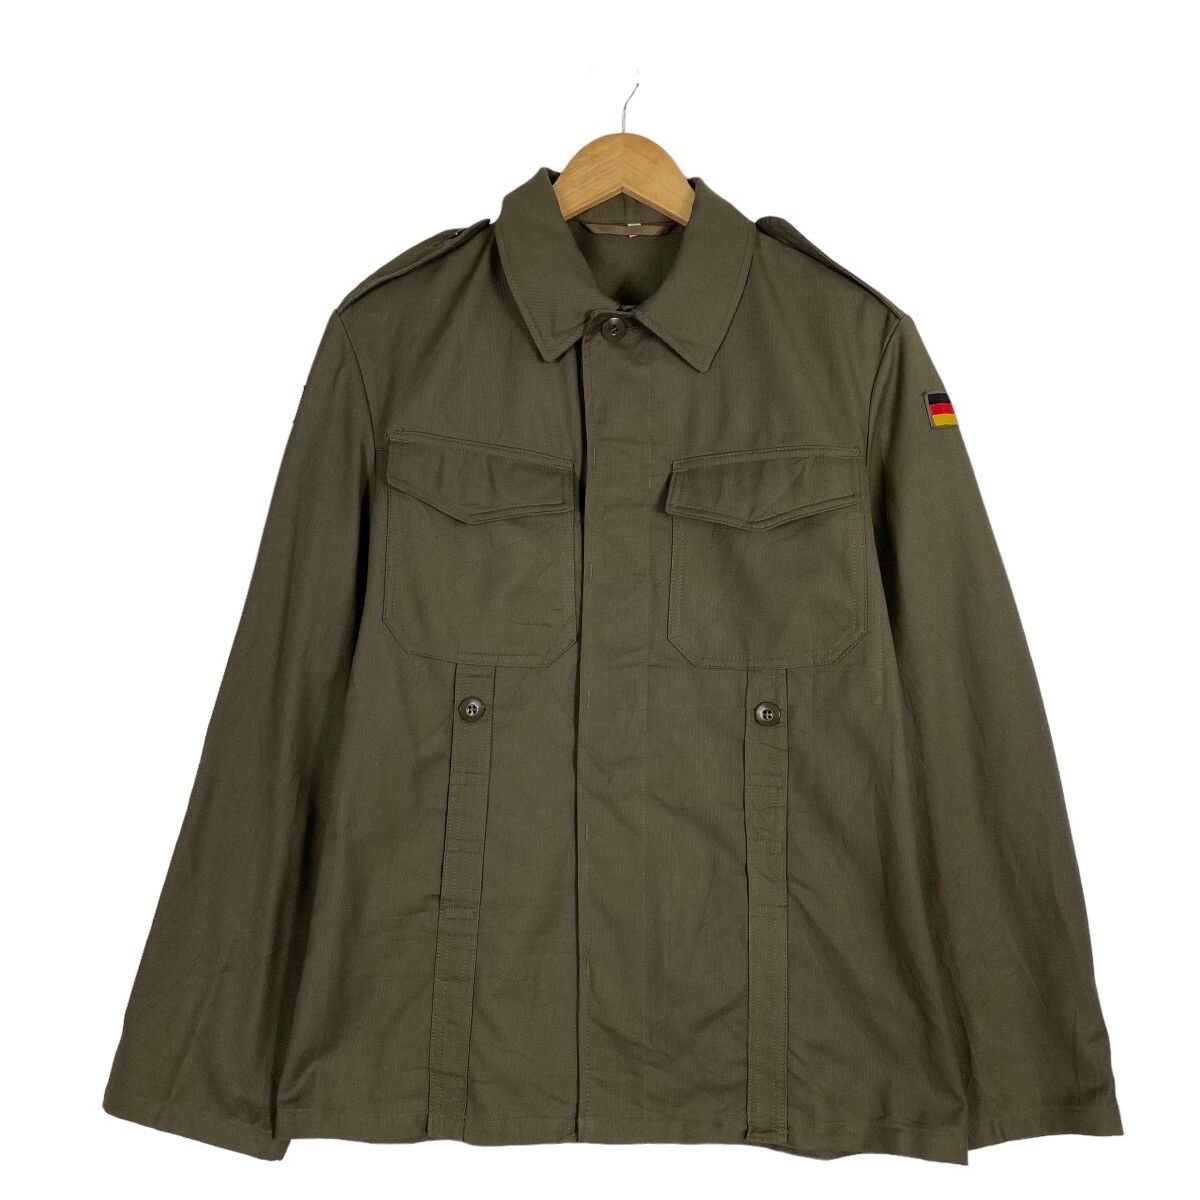 Japanese Brand Vintage 1980 Army German Jacket | Grailed